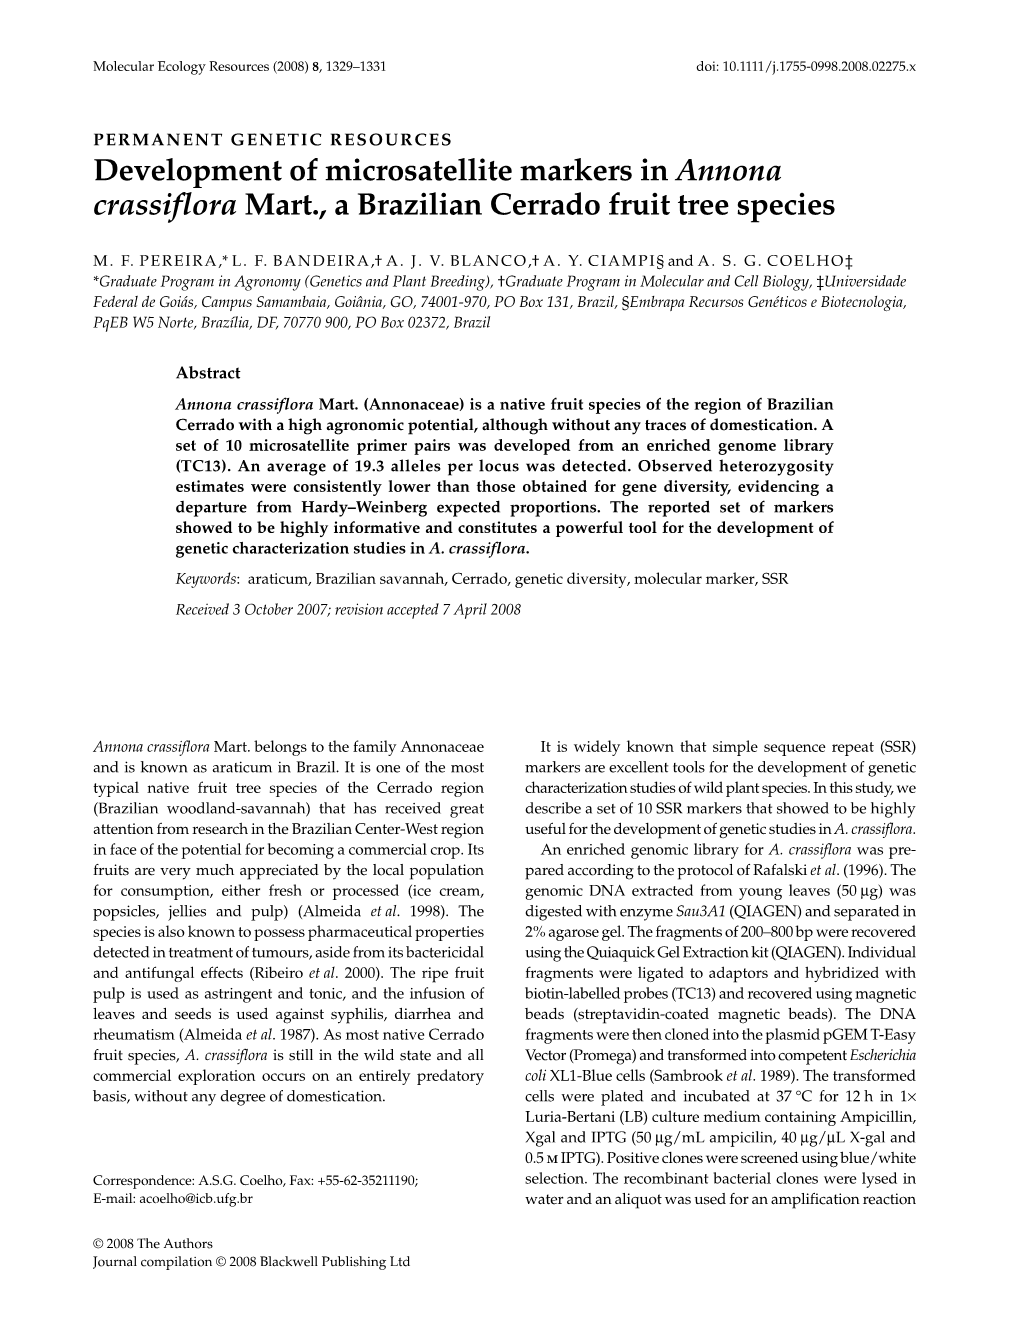 Development of Microsatellite Markers in Annona Crassiflora Mart., a Brazilian Cerrado Fruit Tree Species